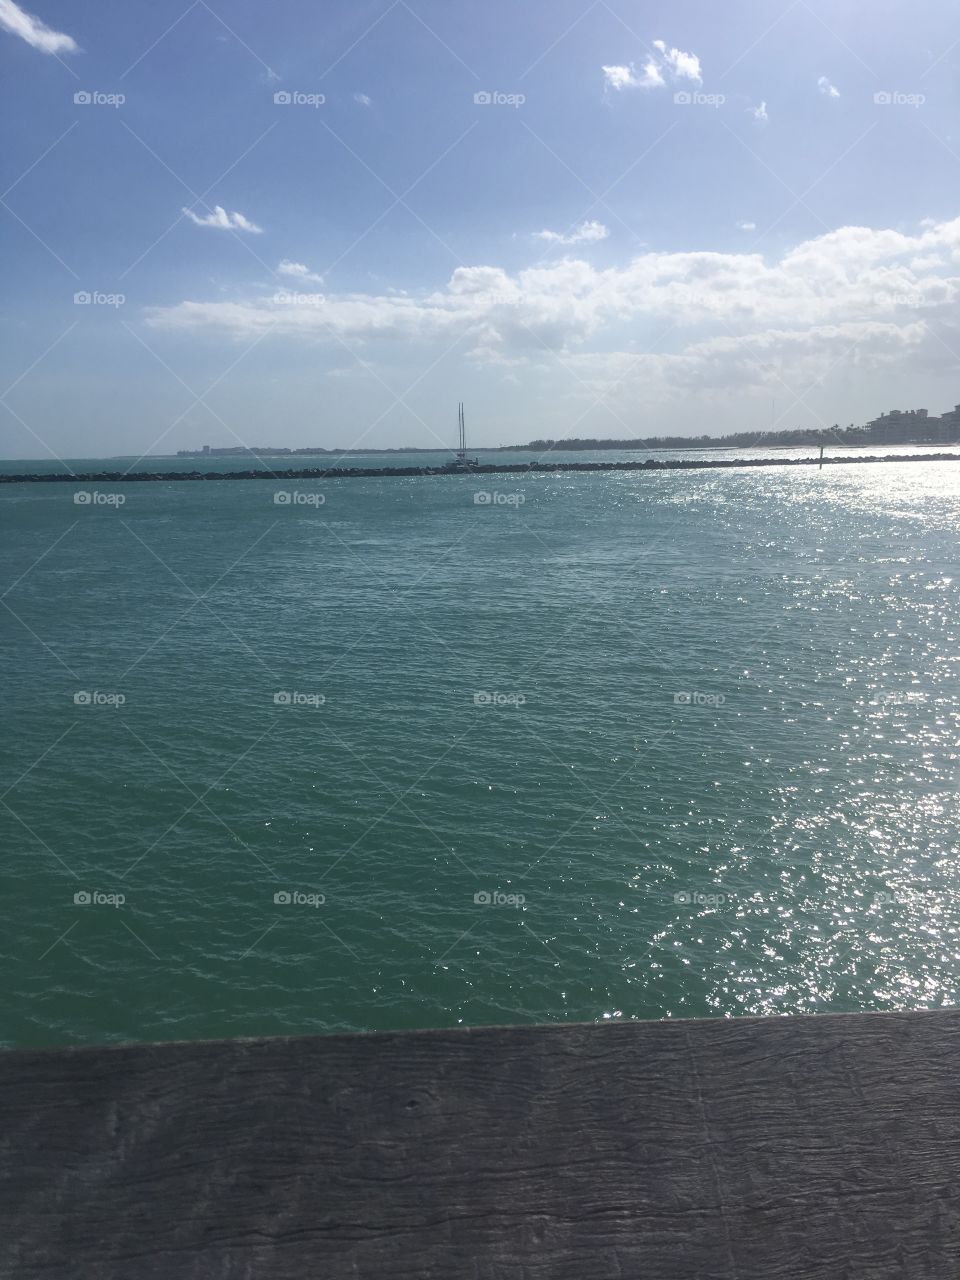 Miami Pier